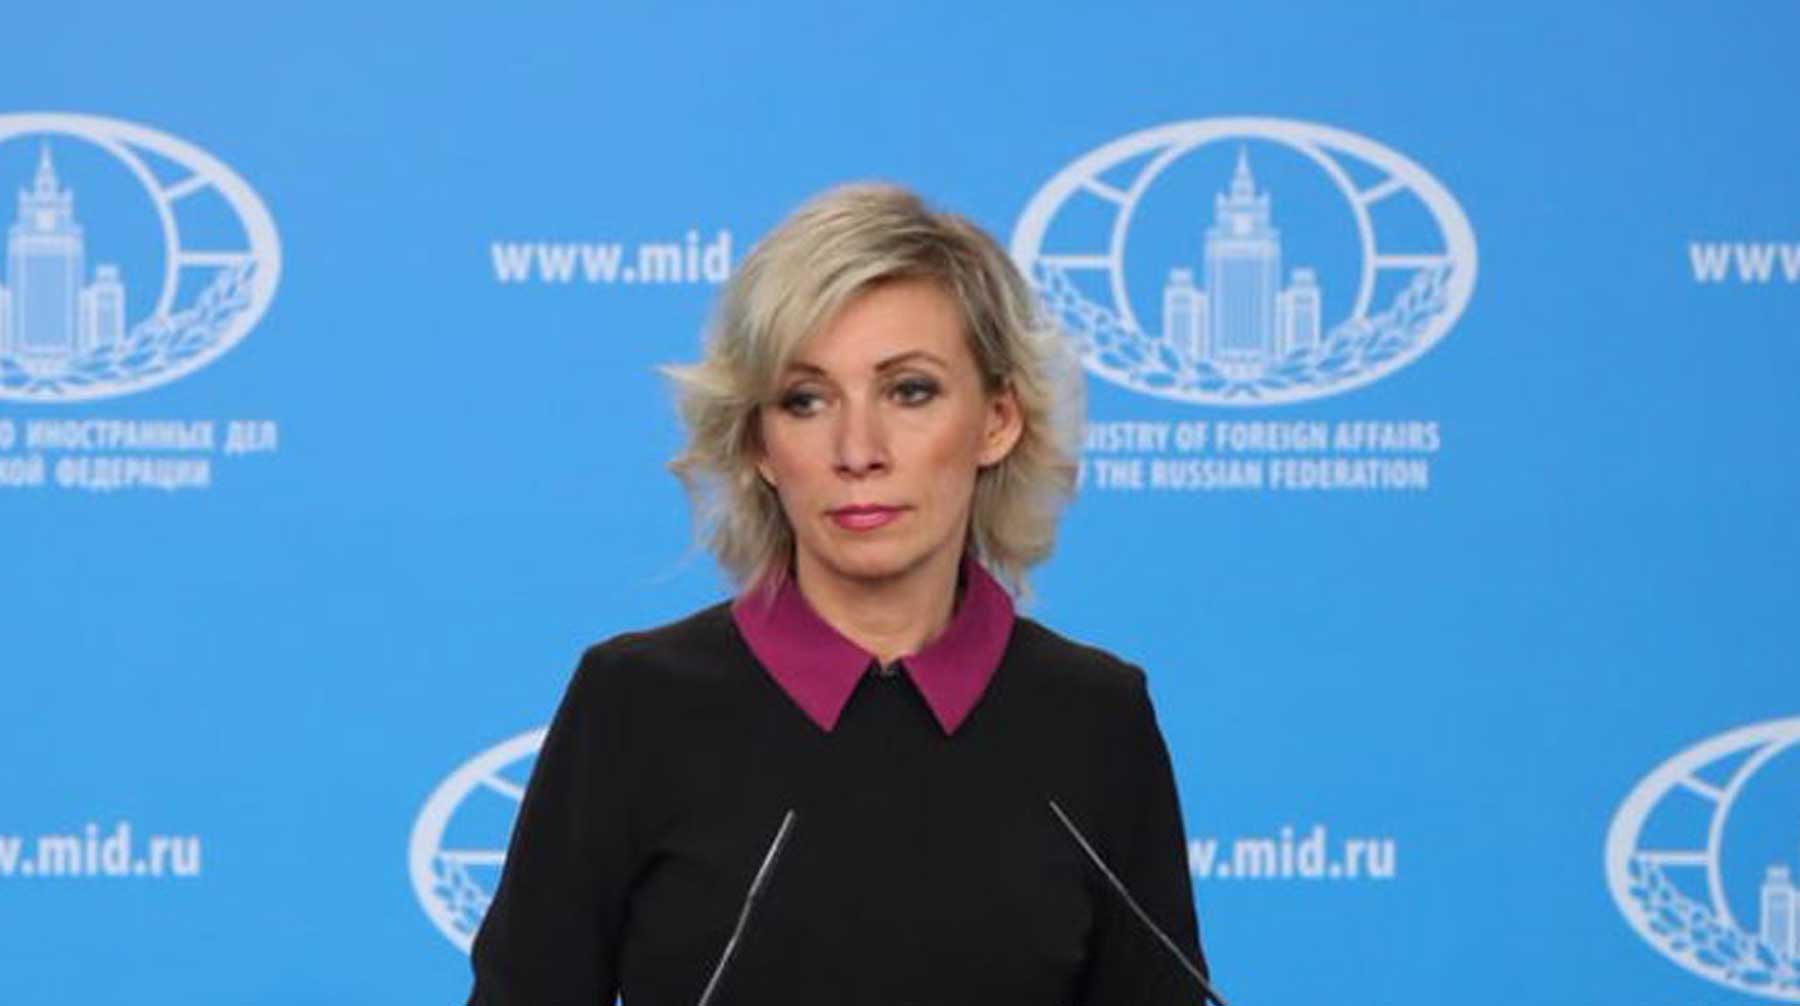 Официальный представитель ведомства Мария Захарова призвала перестать ограничивать российские СМИ в ФРГ Мария Захарова